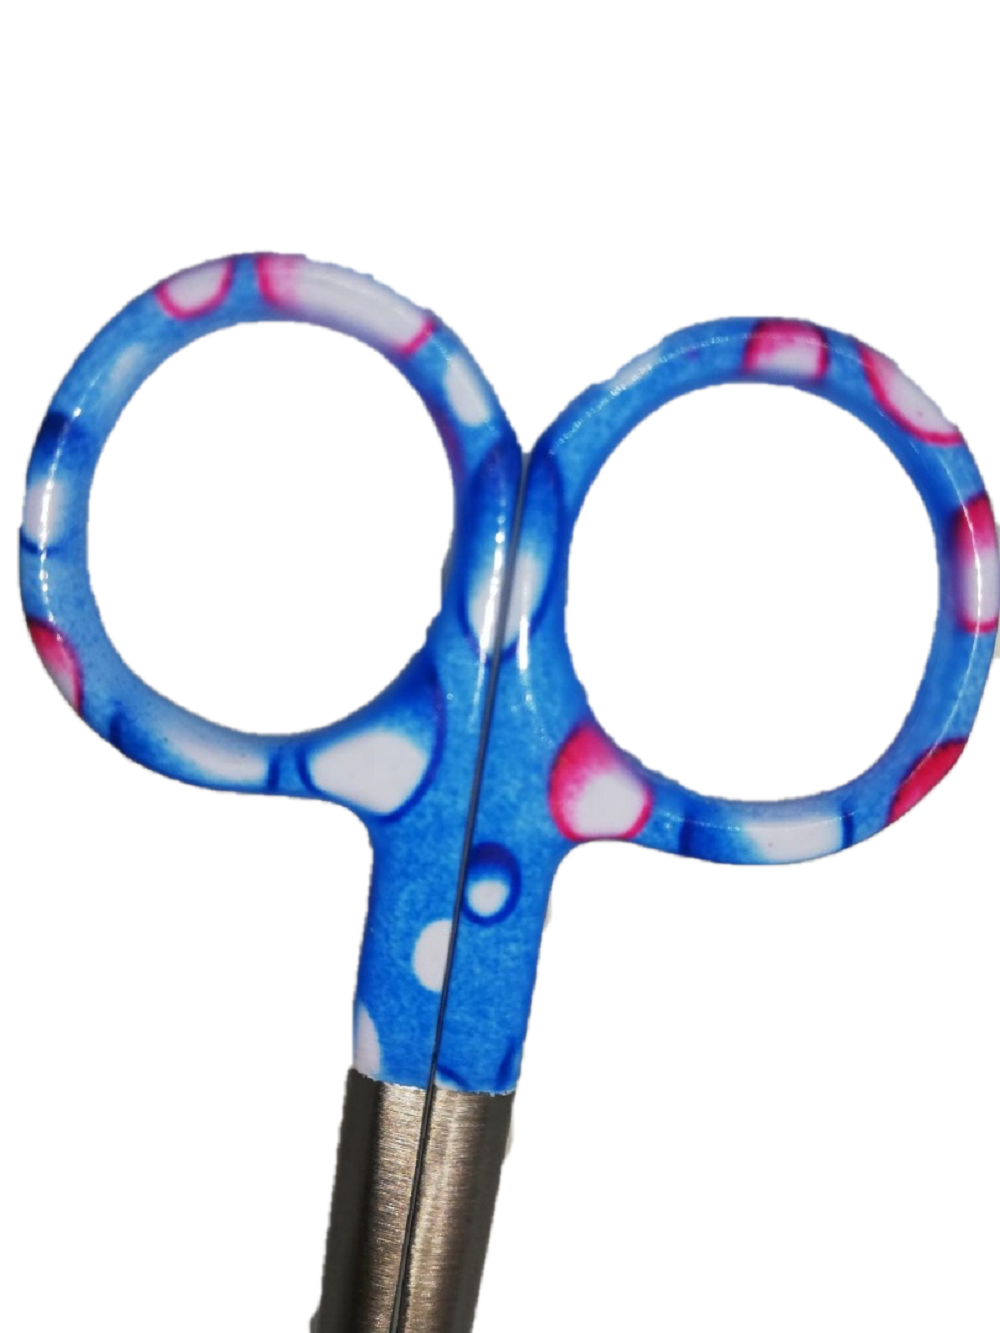 nursing scissors blue bubble design